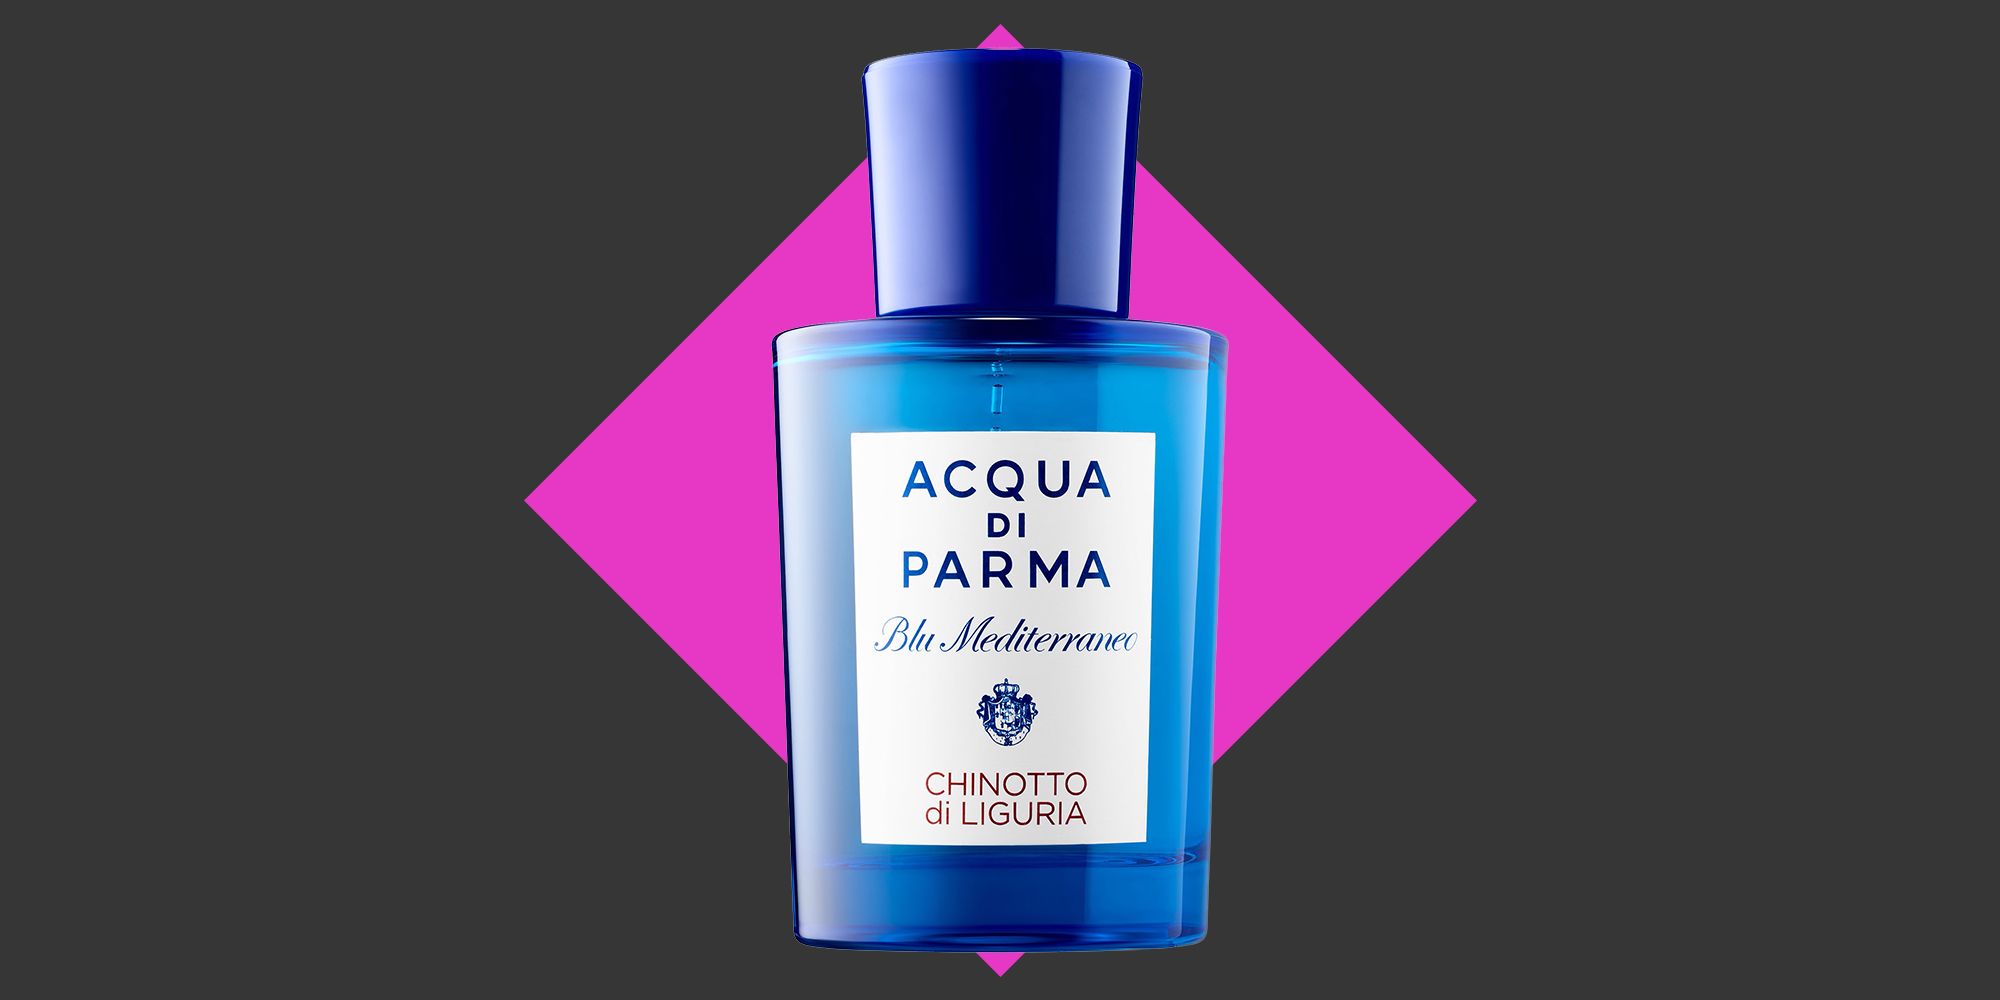 Acqua di Parma, fragrances, beauty products - Perfumes & Cosmetics